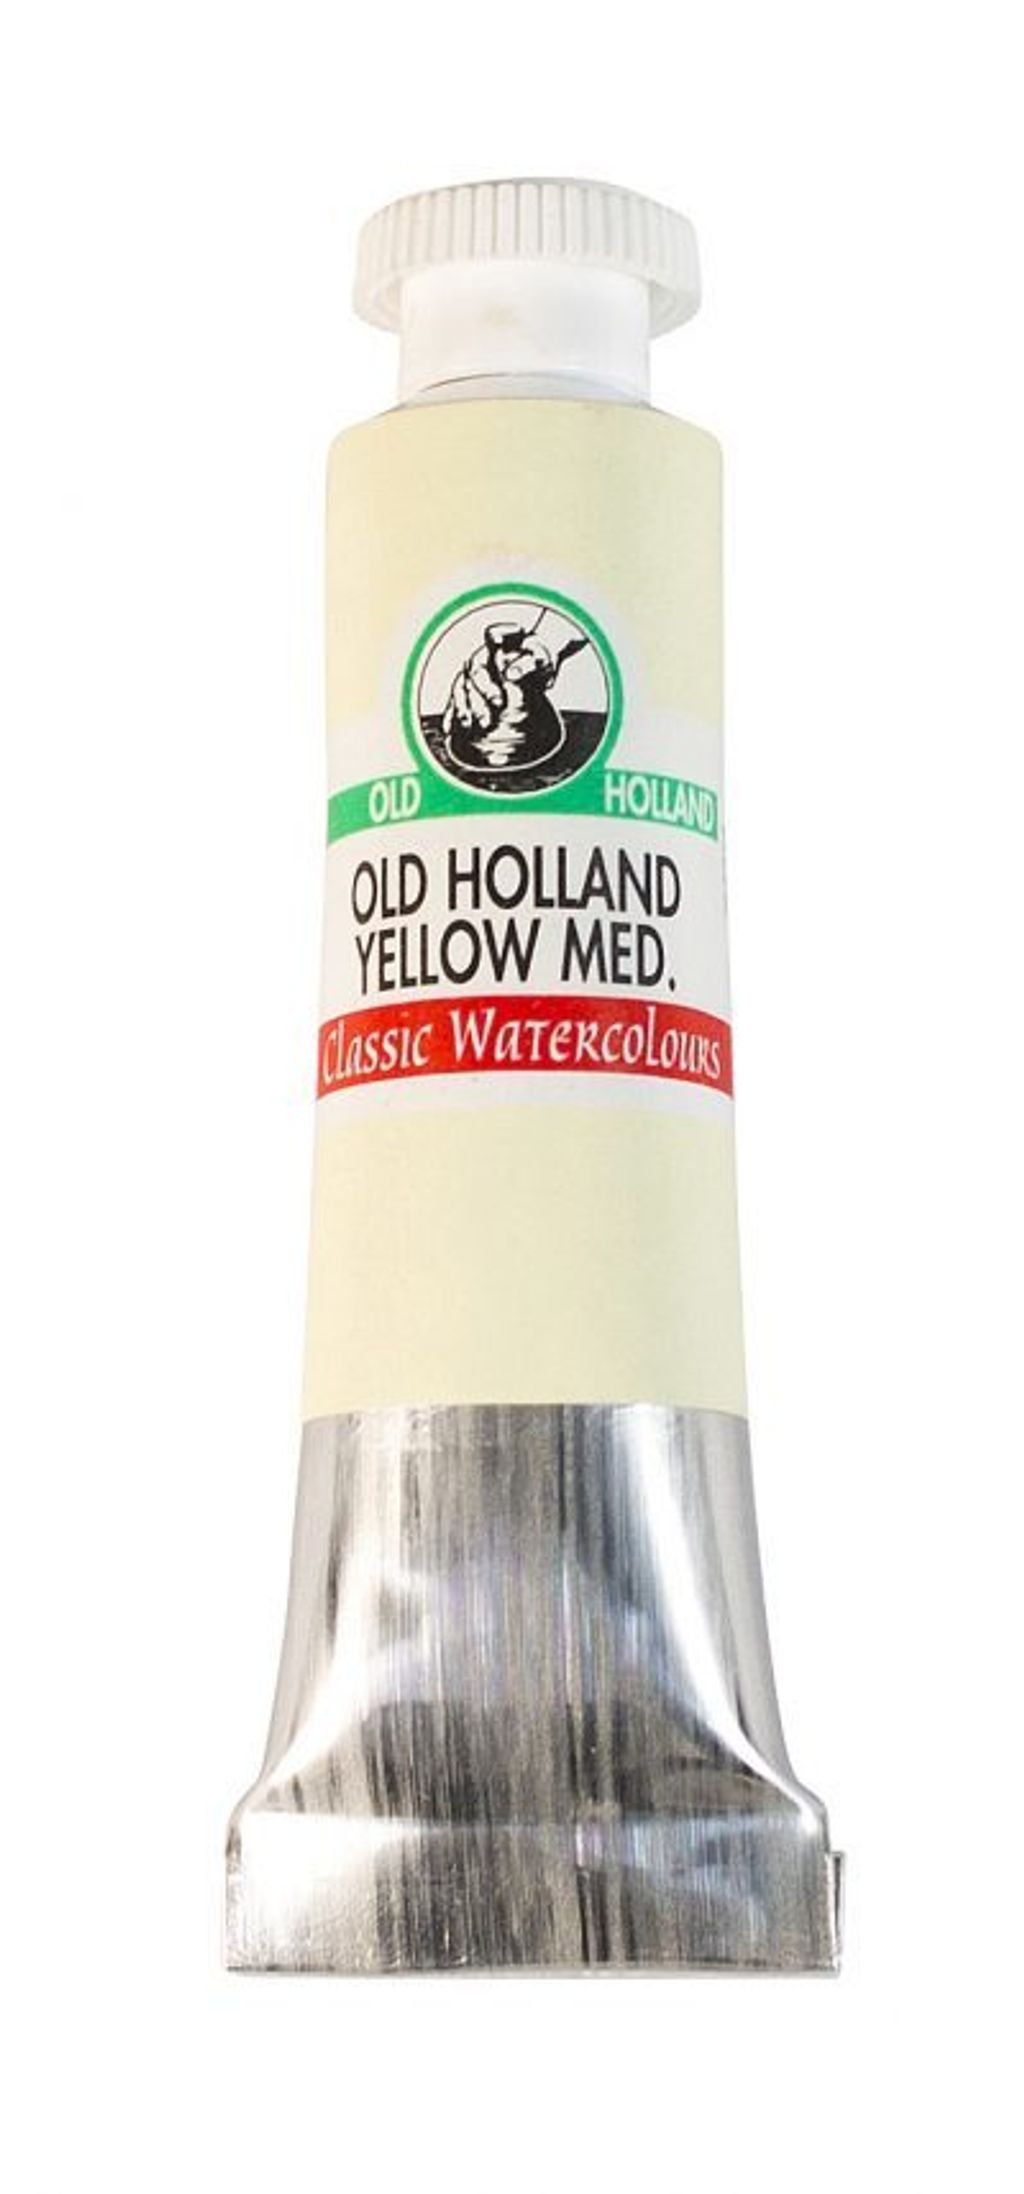 B7_Old_Holland_Yellow_Medium-400x857.jpg